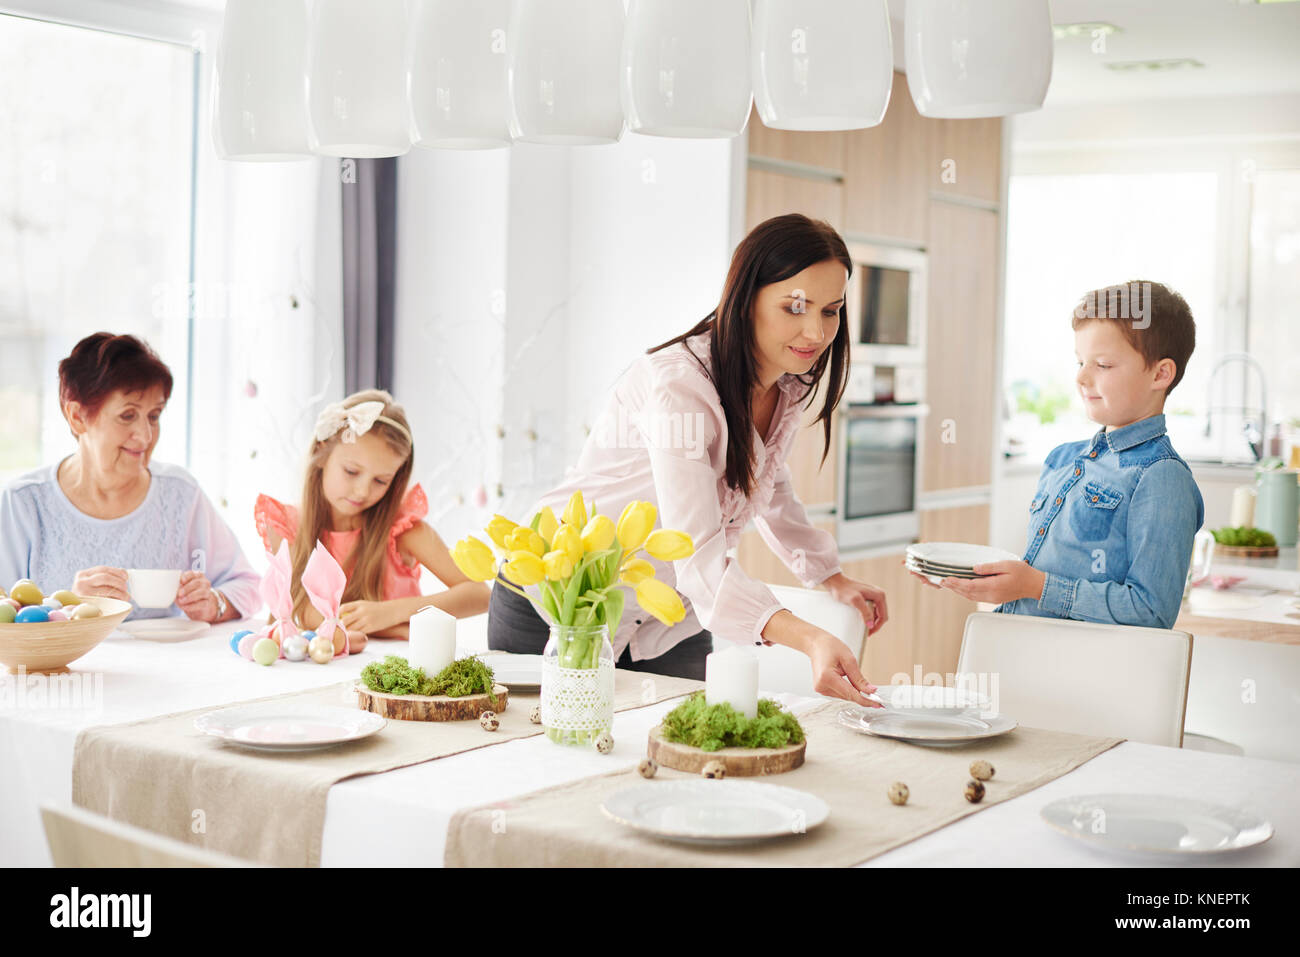 La donna e la famiglia preparando le regolazioni del posto a pasqua tavolo da pranzo Foto Stock